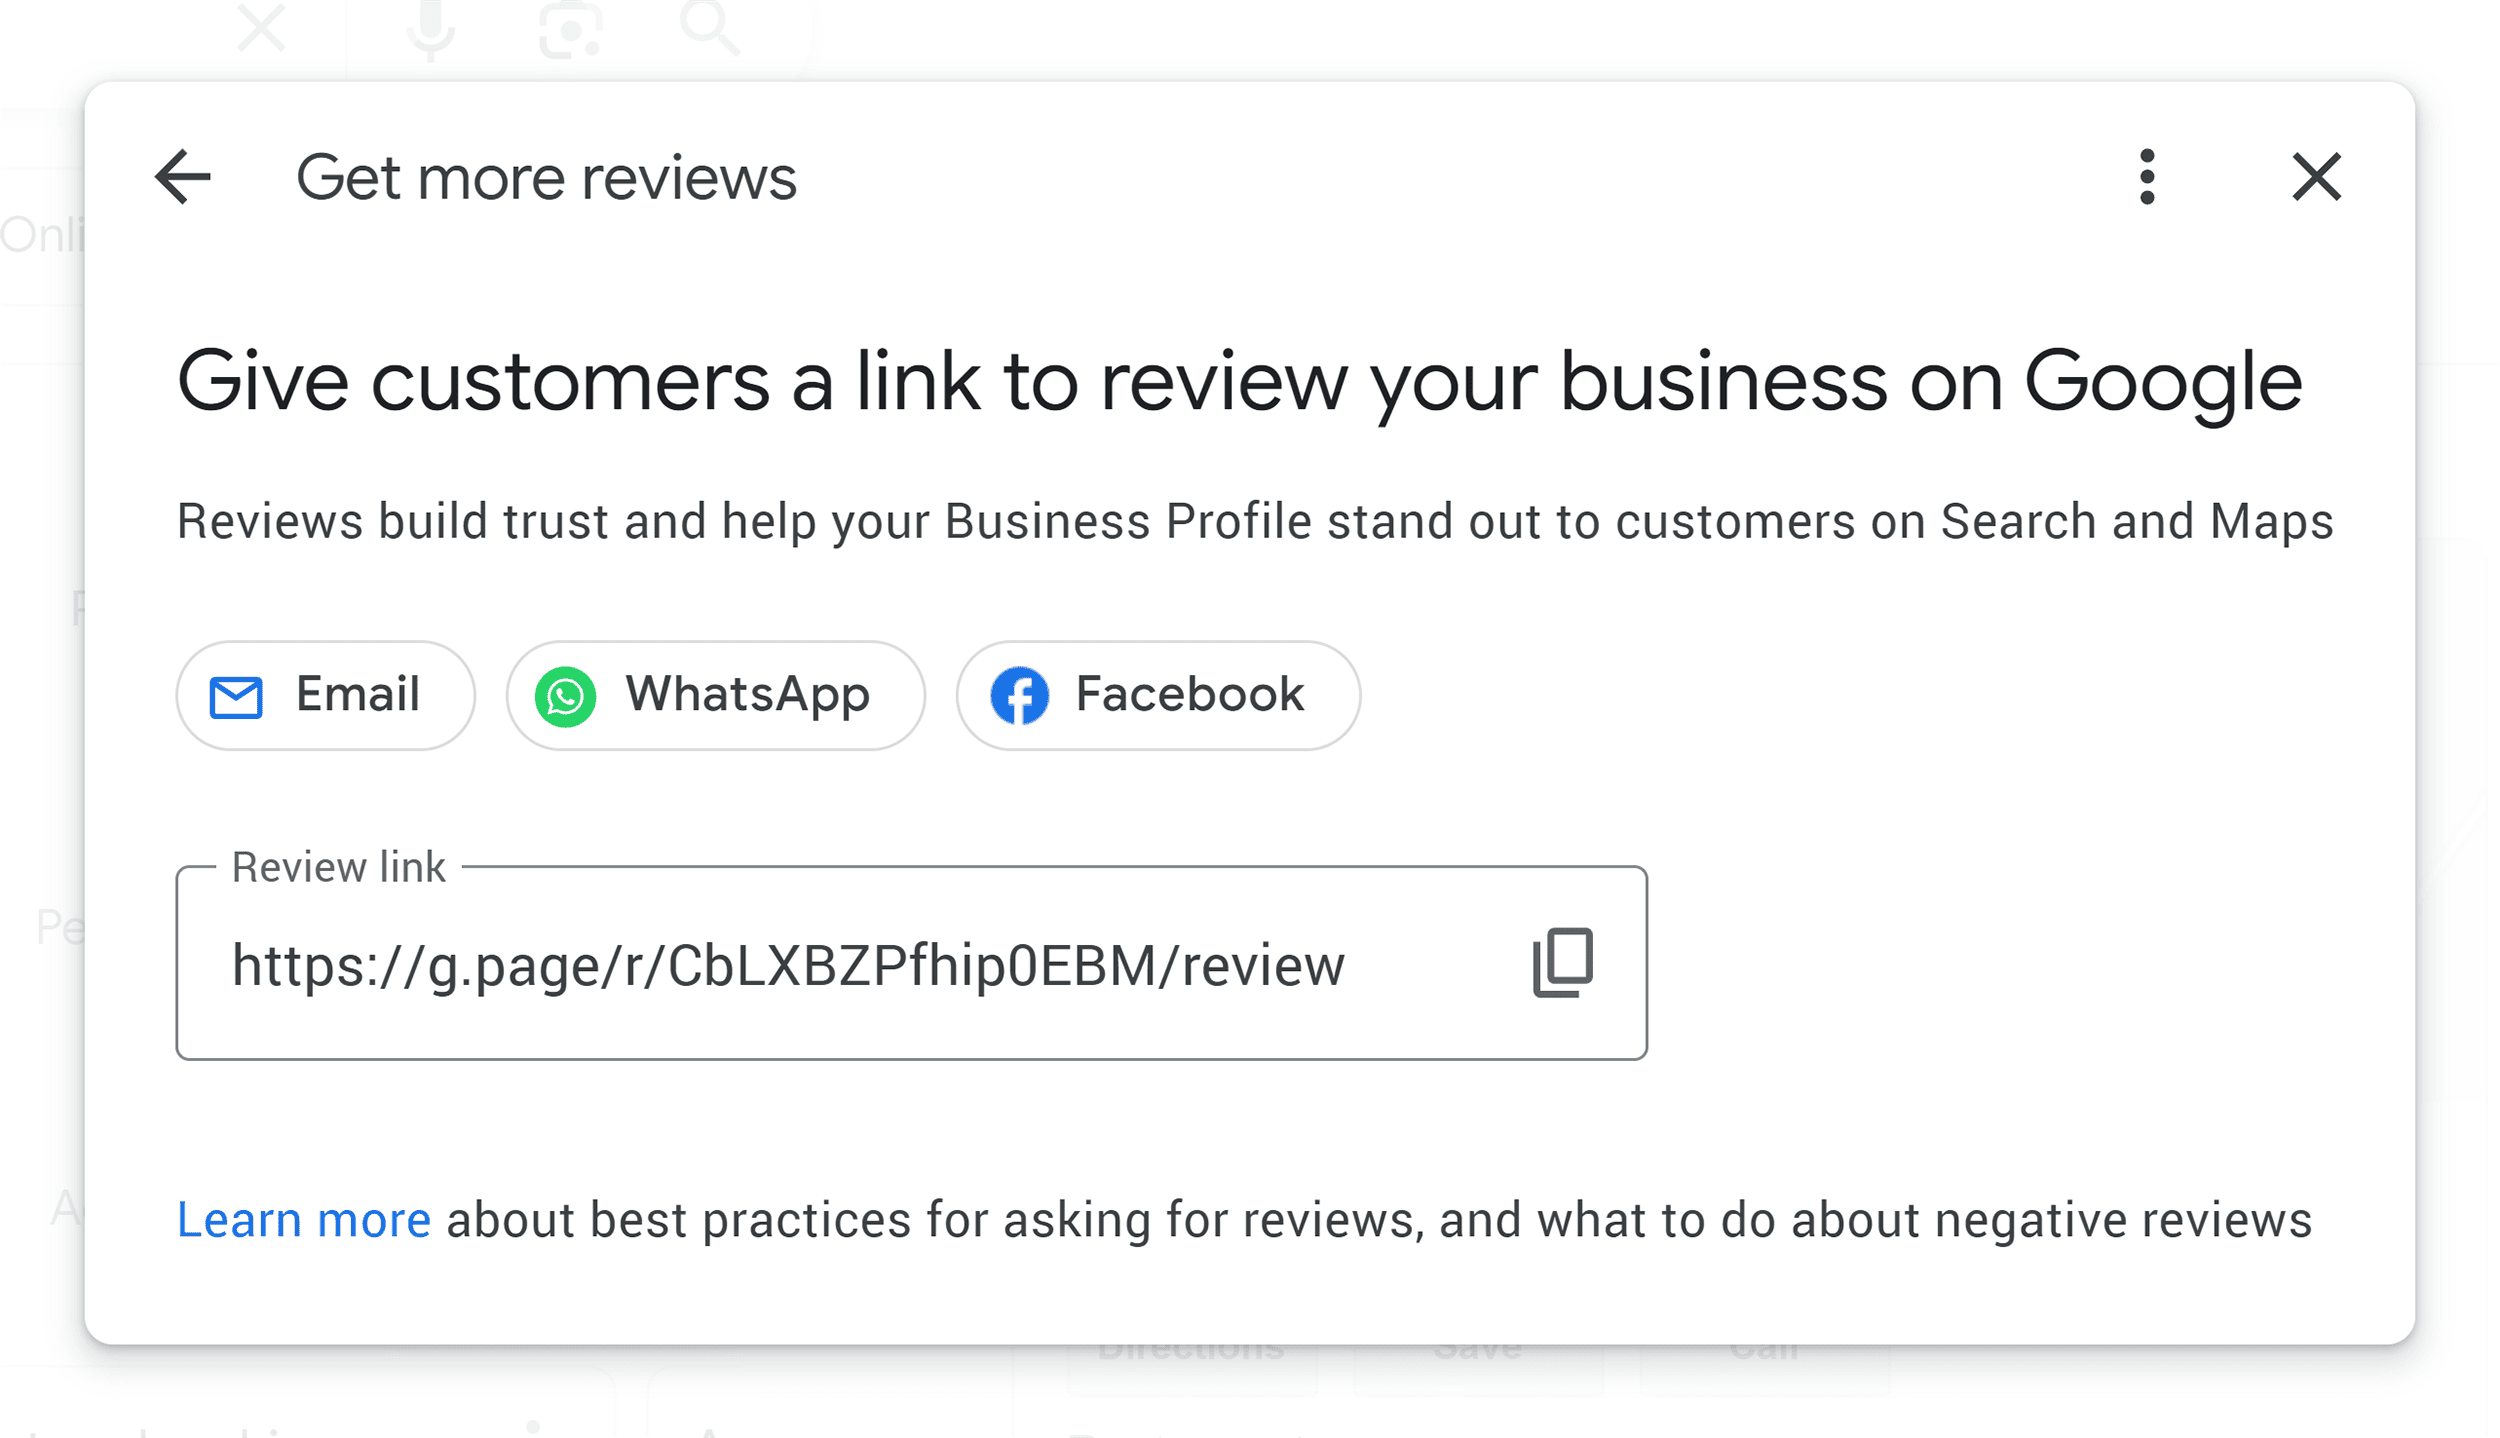 Get more reviews – Links